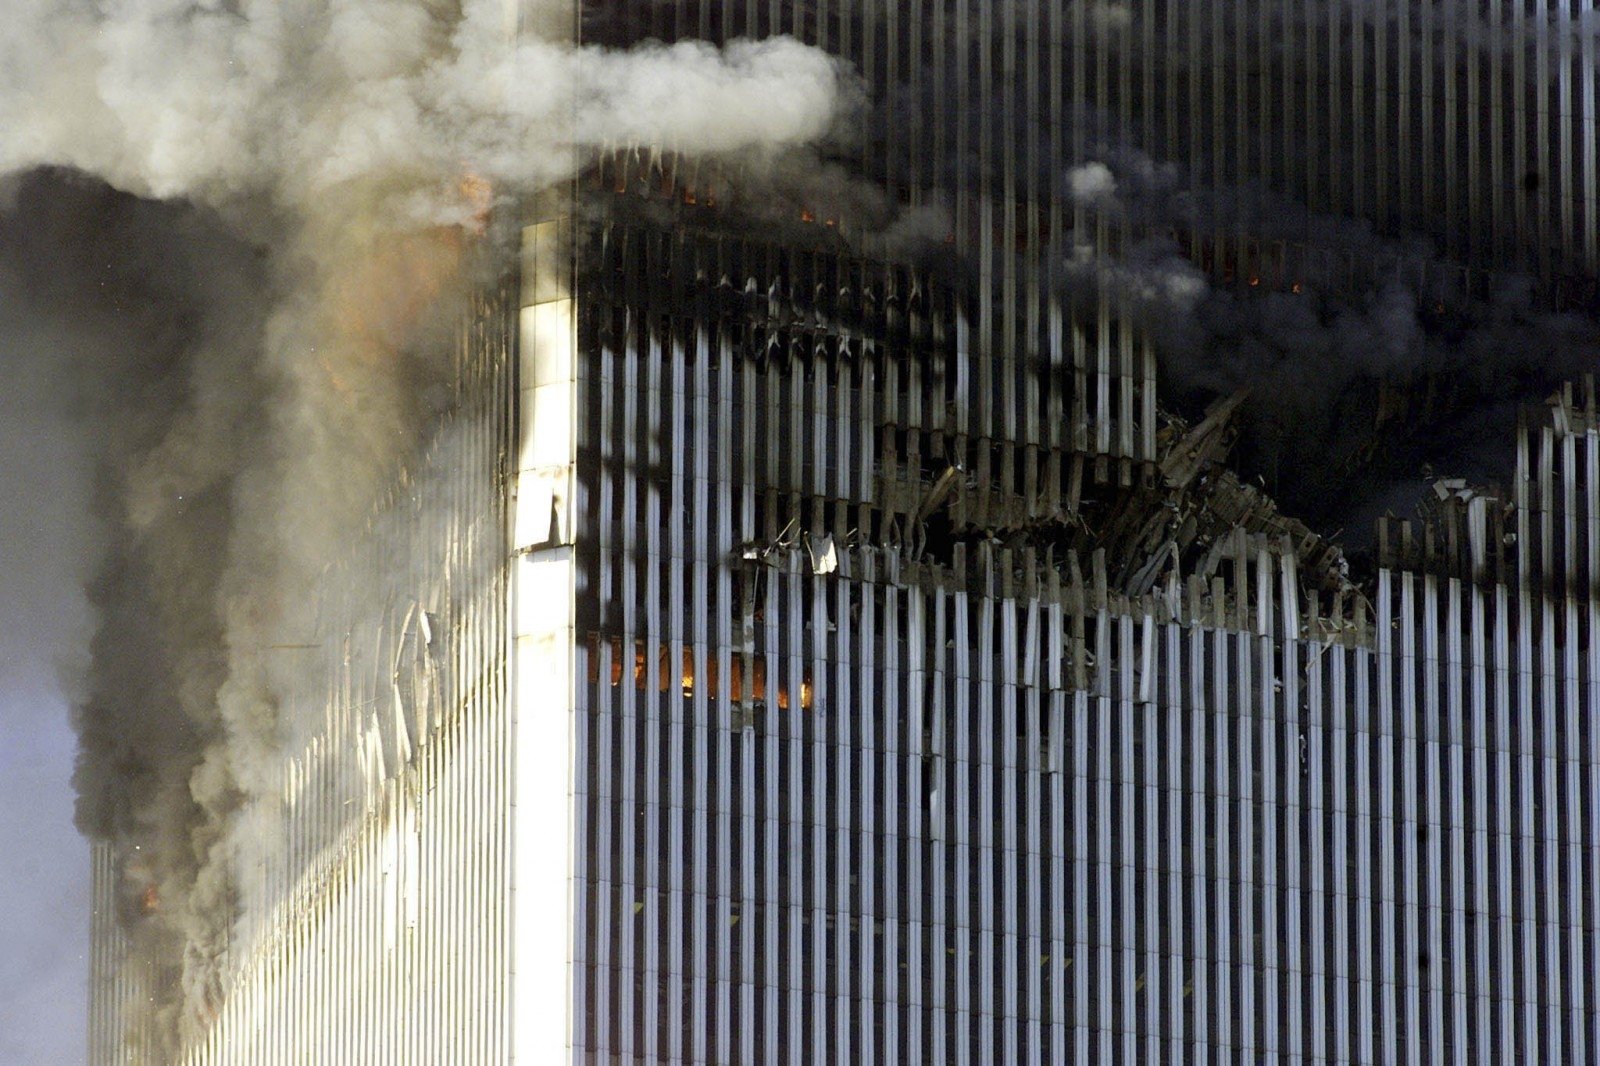 Маск 11 сентября. Башни ВТЦ 11 сентября 2001. Всемирный торговый центр башни Близнецы 11 сентября. 11 Сентября 2001 первый самолет. 9\11 North Tower.